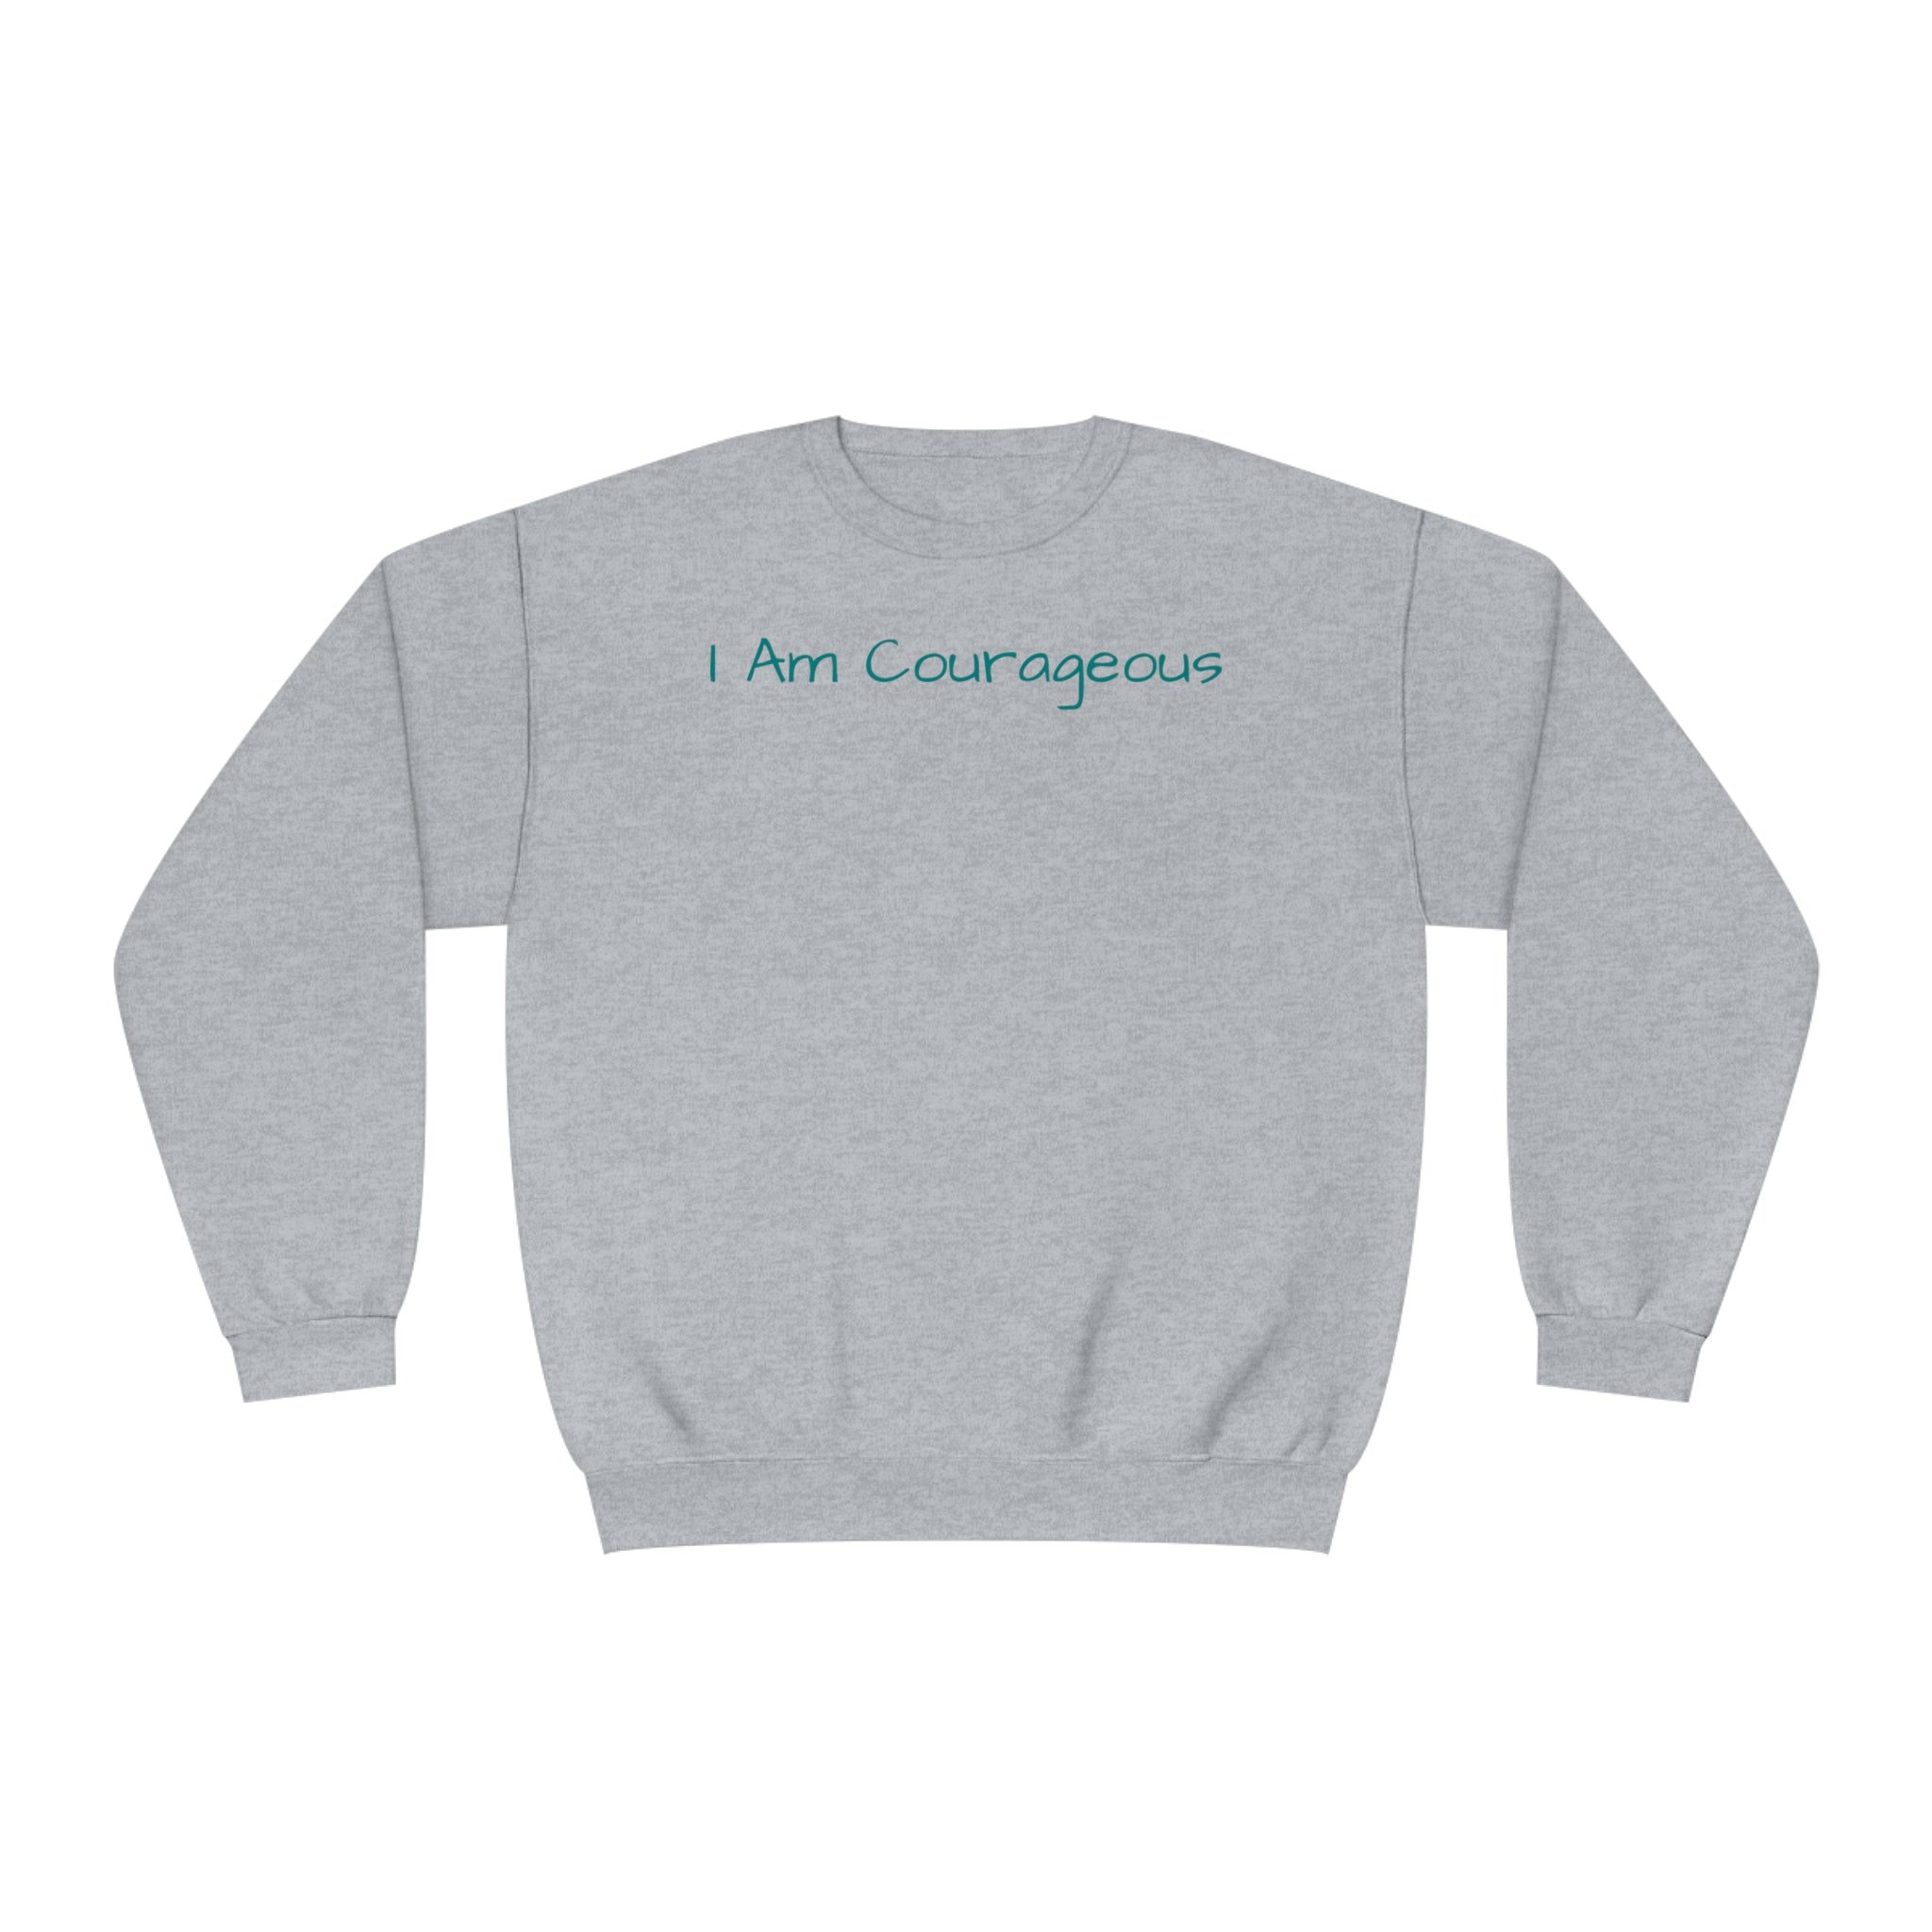 I Am Courageous Fleece: Comfort & Empowerment Sandstone Comfy Sweater Cozy Sweatshirt Crewneck Sweatshirt Fleece Pullover Graphic Sweatshirt Men's Sweatshirt Streatwear Sweatshirt Warm Outerwear Women's Sweatshirt Sweatshirt 6703995494495953635_2048 Printify